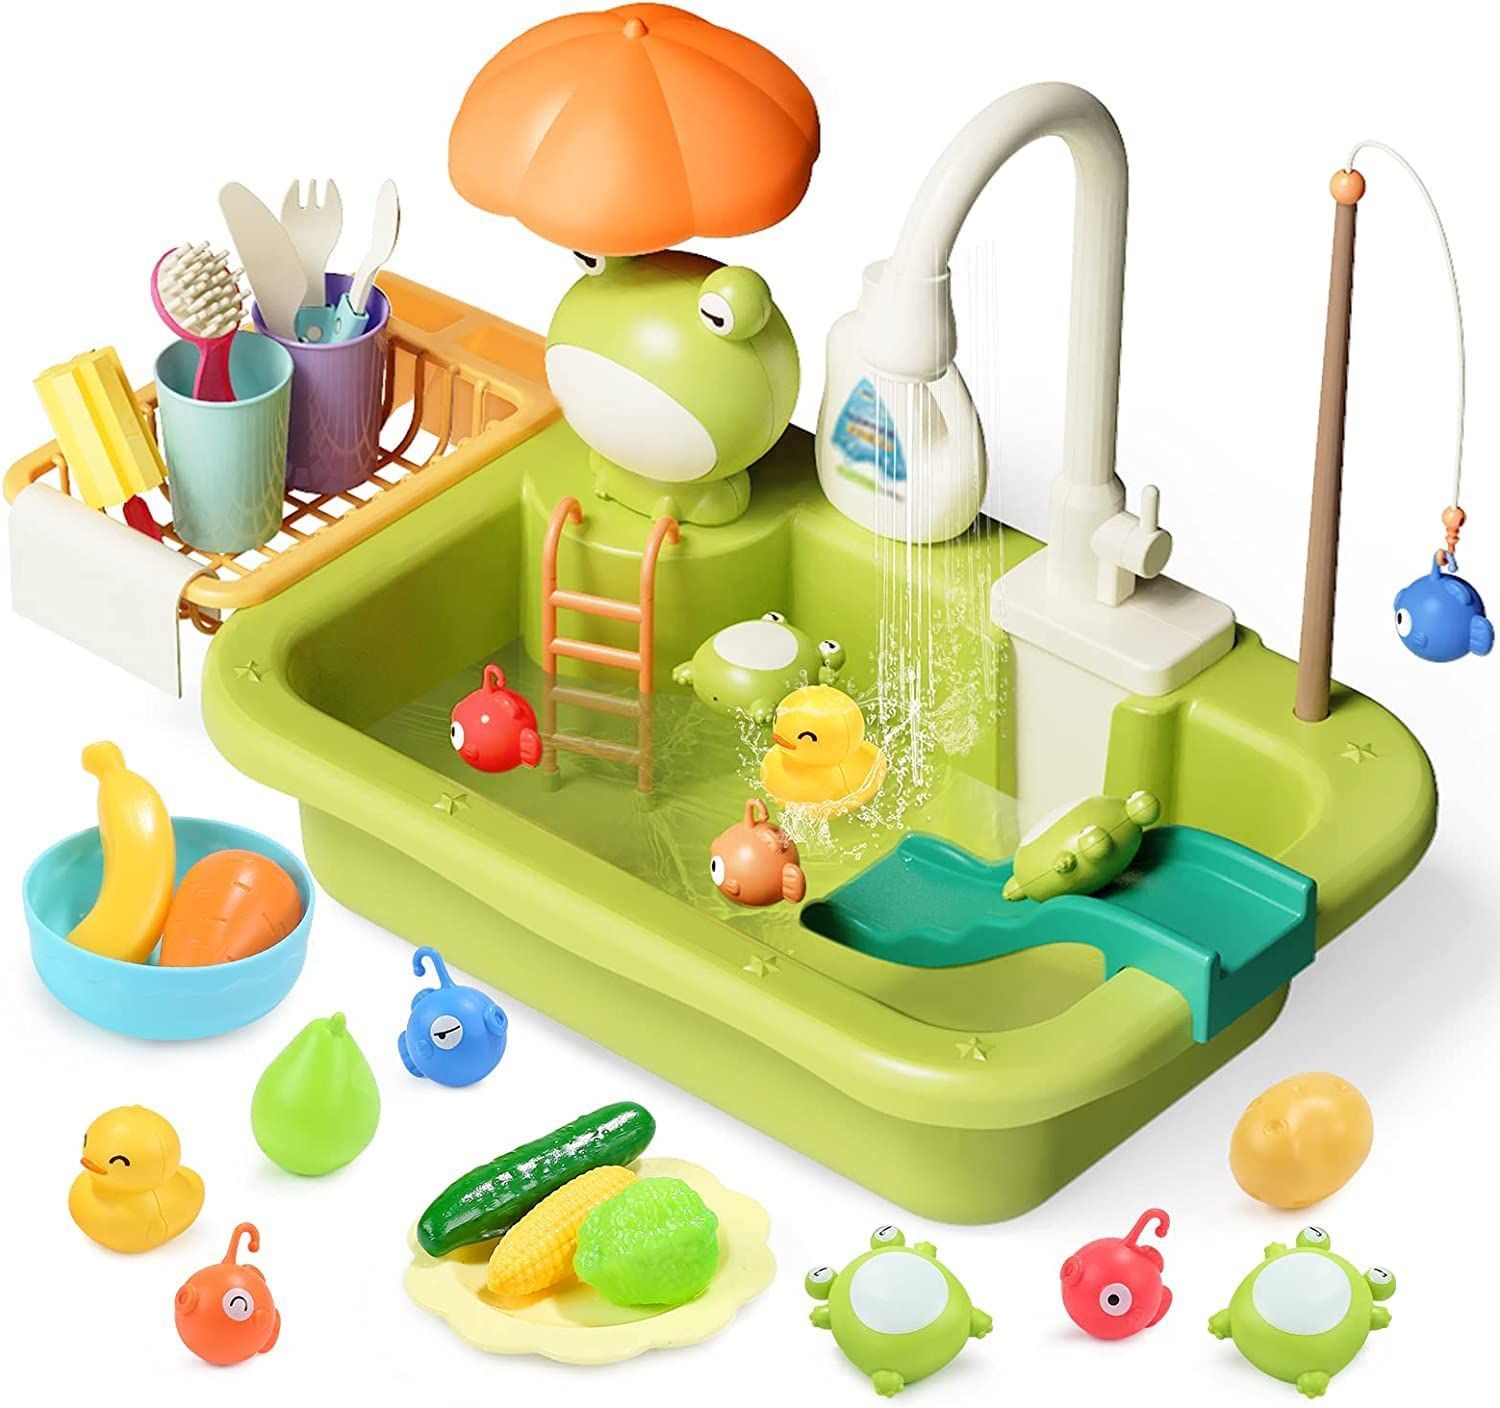 特価商品】食器洗い機おもちゃ 2in1遊び方 35点セット 水遊び キッチン 